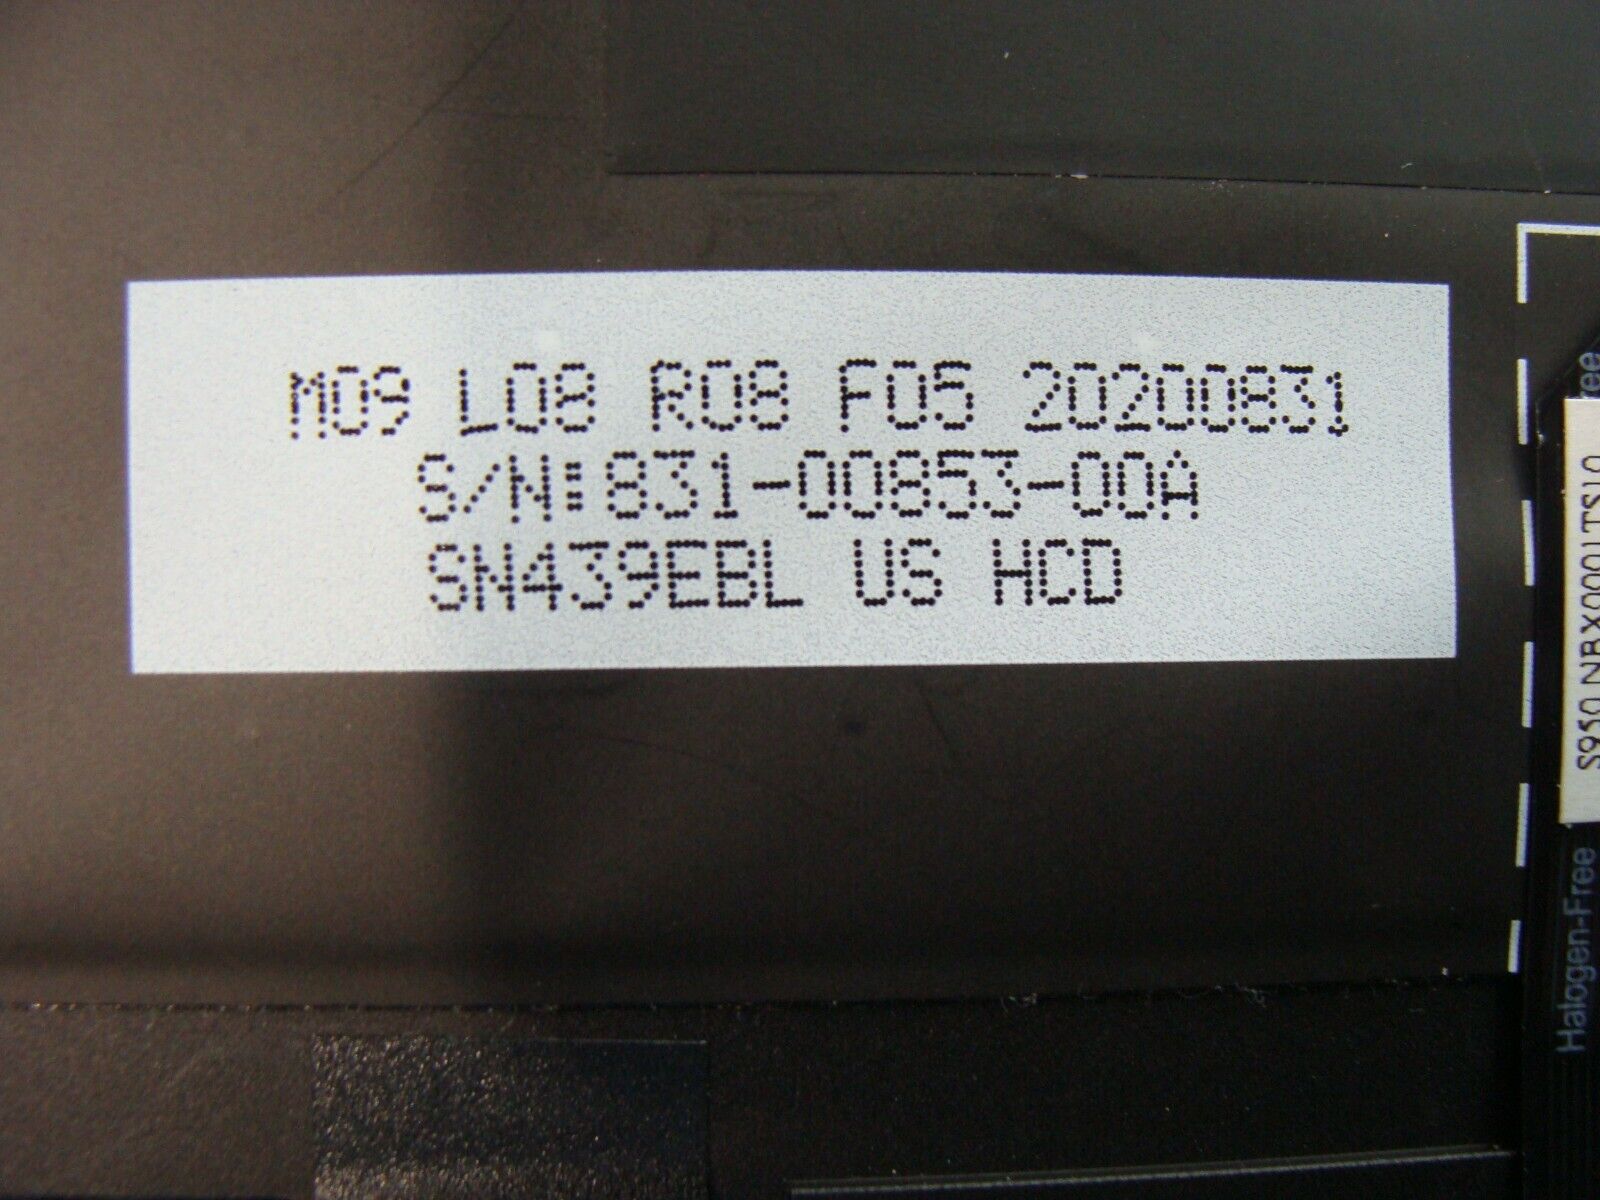 Lenovo IdeaPad Slim 9 14ITL5 14